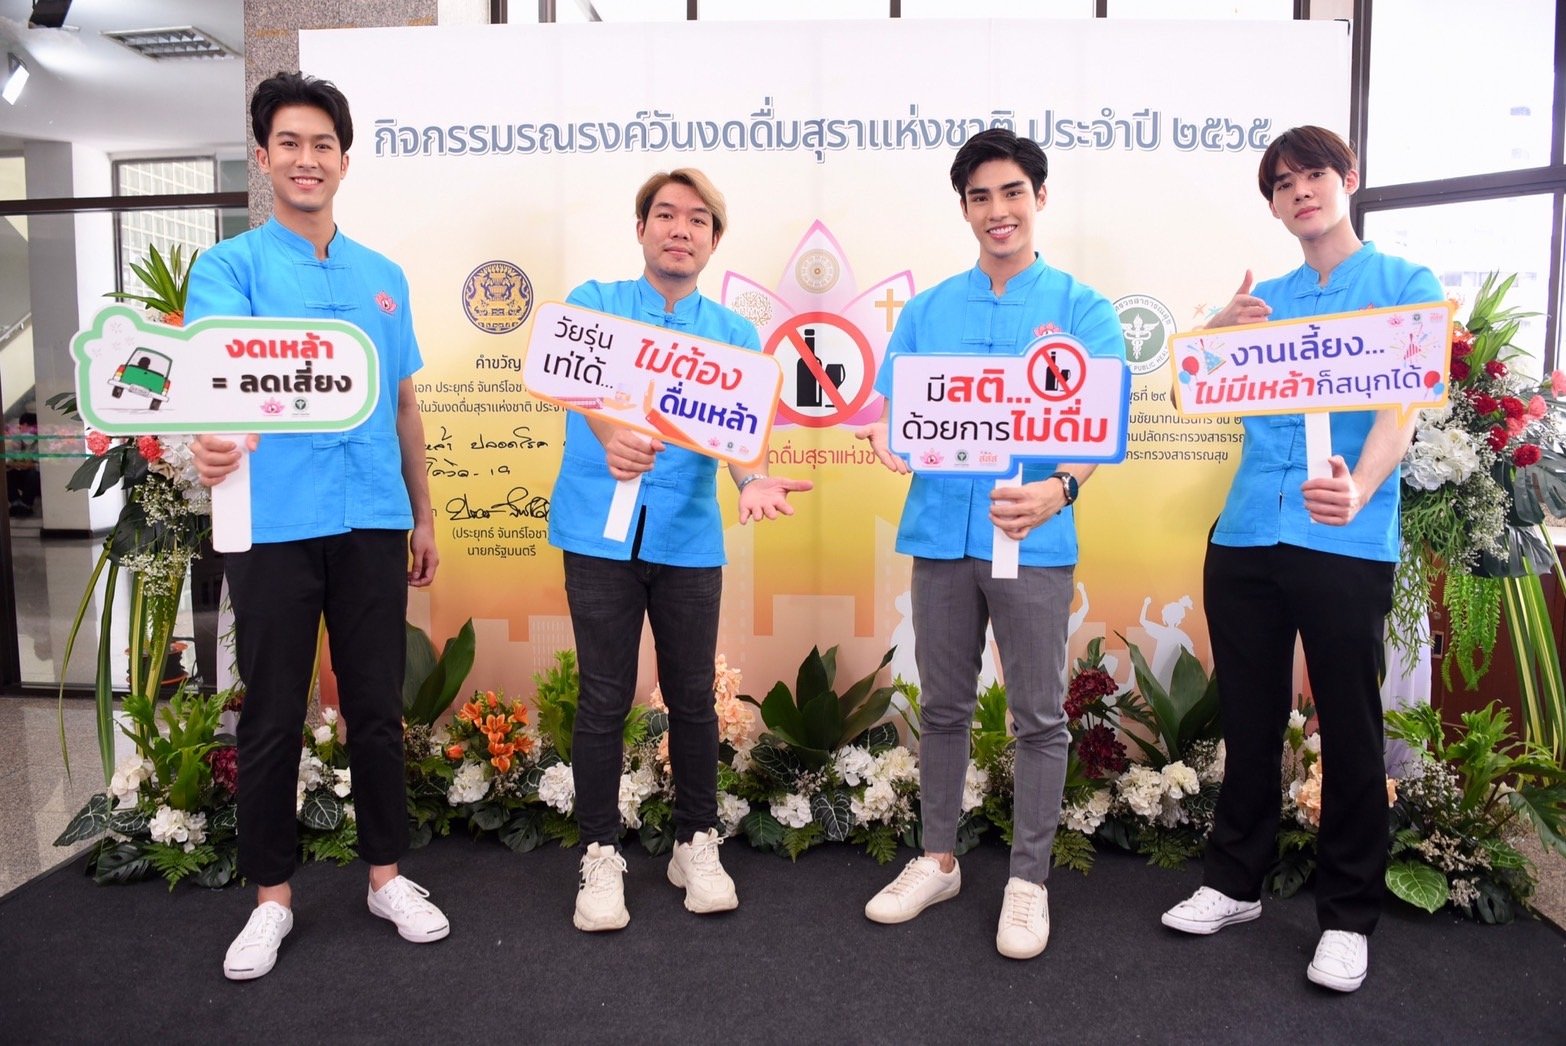 ชวนงดเหล้าเข้าพรรษา 1 ลด 3 เพิ่ม  เนื่องในวันงดดื่มสุราแห่งชาติ ปี 65 thaihealth